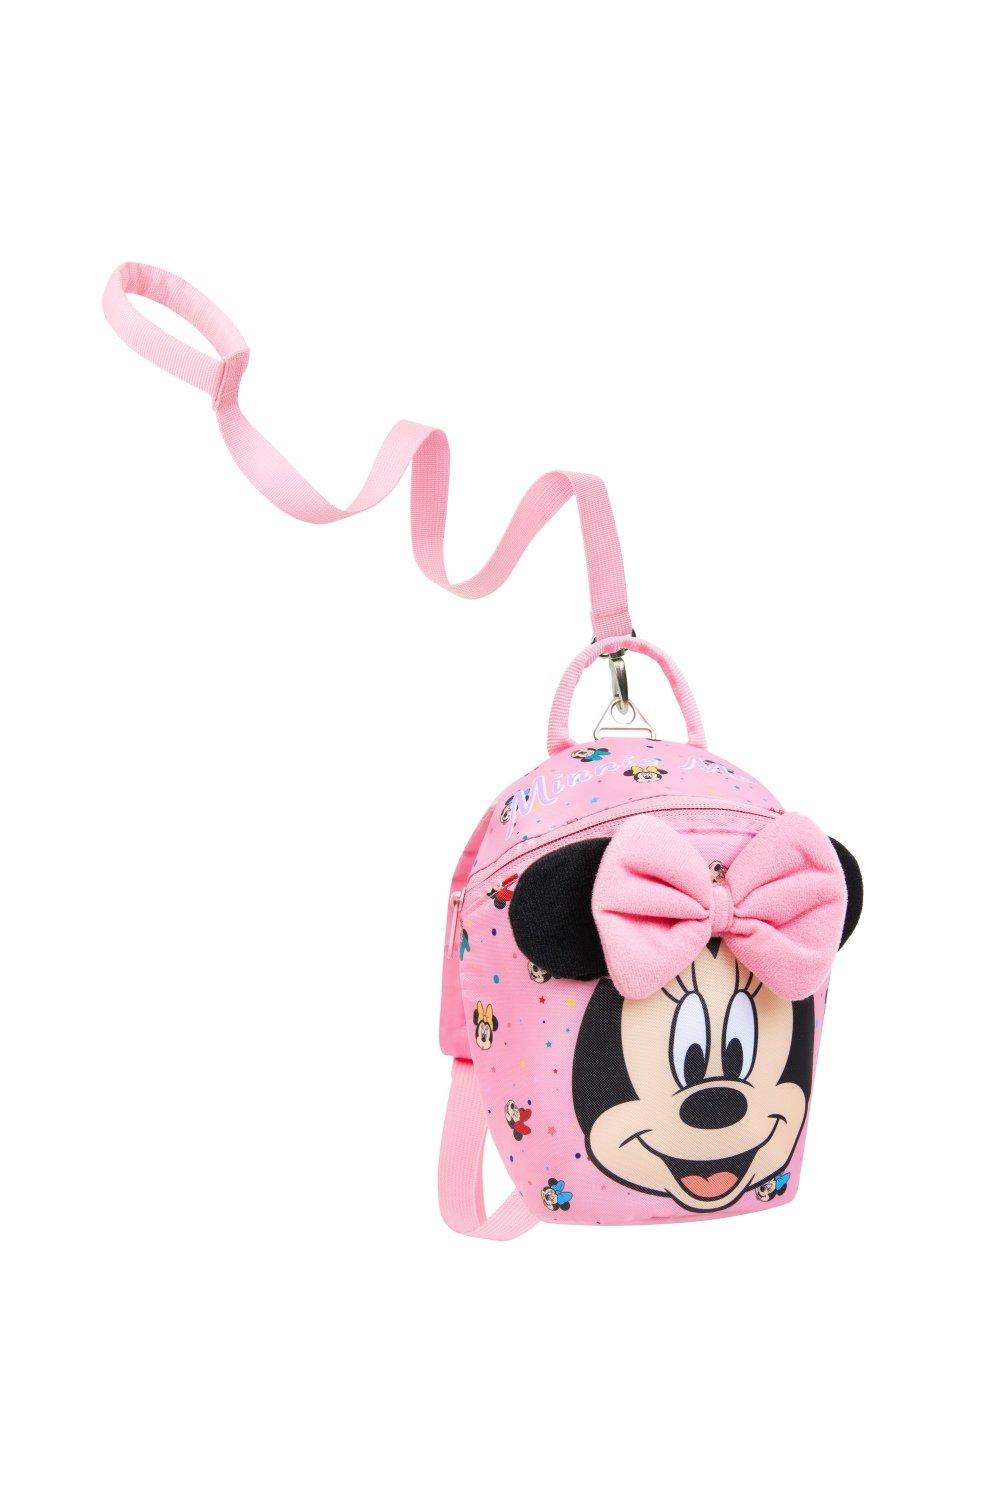 Рюкзак для малышей с поводьями Minnie, розовый рюкзак минни маус mickey mouse голубой 1